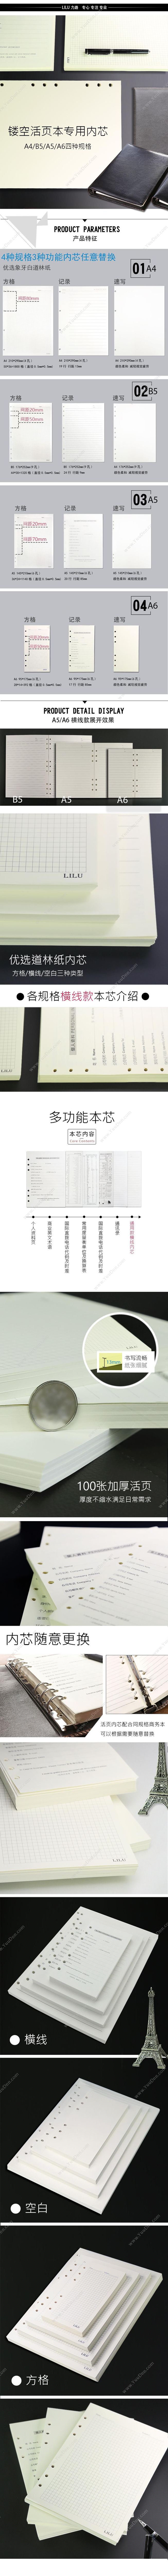 力路 LiLu HD-0099 九孔替芯 空白 B5 100页 活页